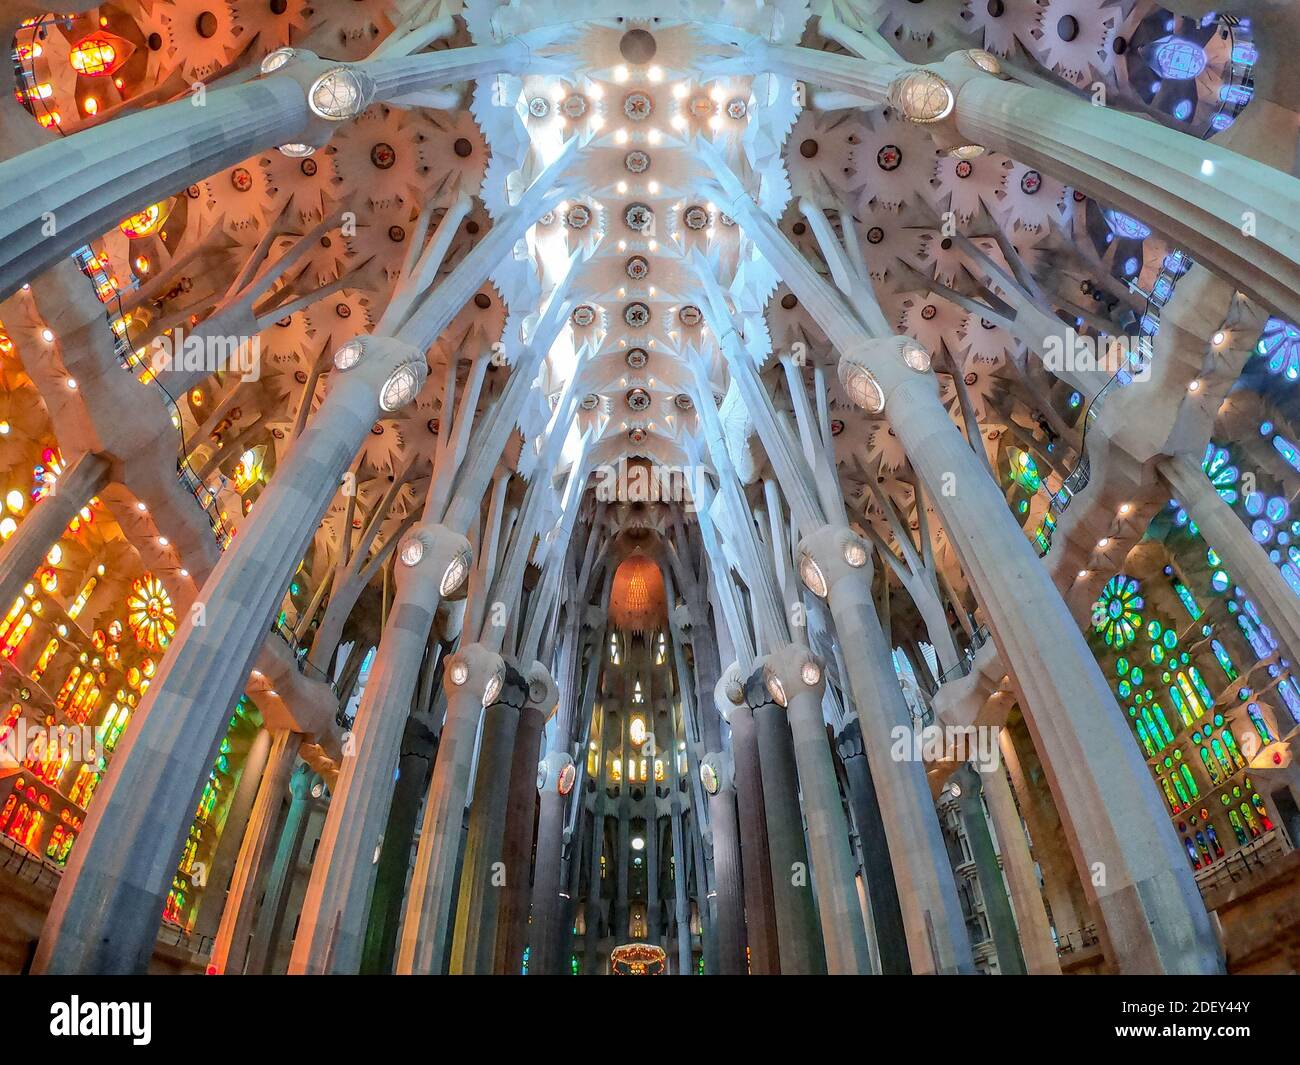 LE plafond DE BARCELONE et les colonnes de la basilique i Temple Expiatori De la Sagrada Familia (Basilique et église d'Expiatoire de la Sainte famille) à Barcelone Banque D'Images